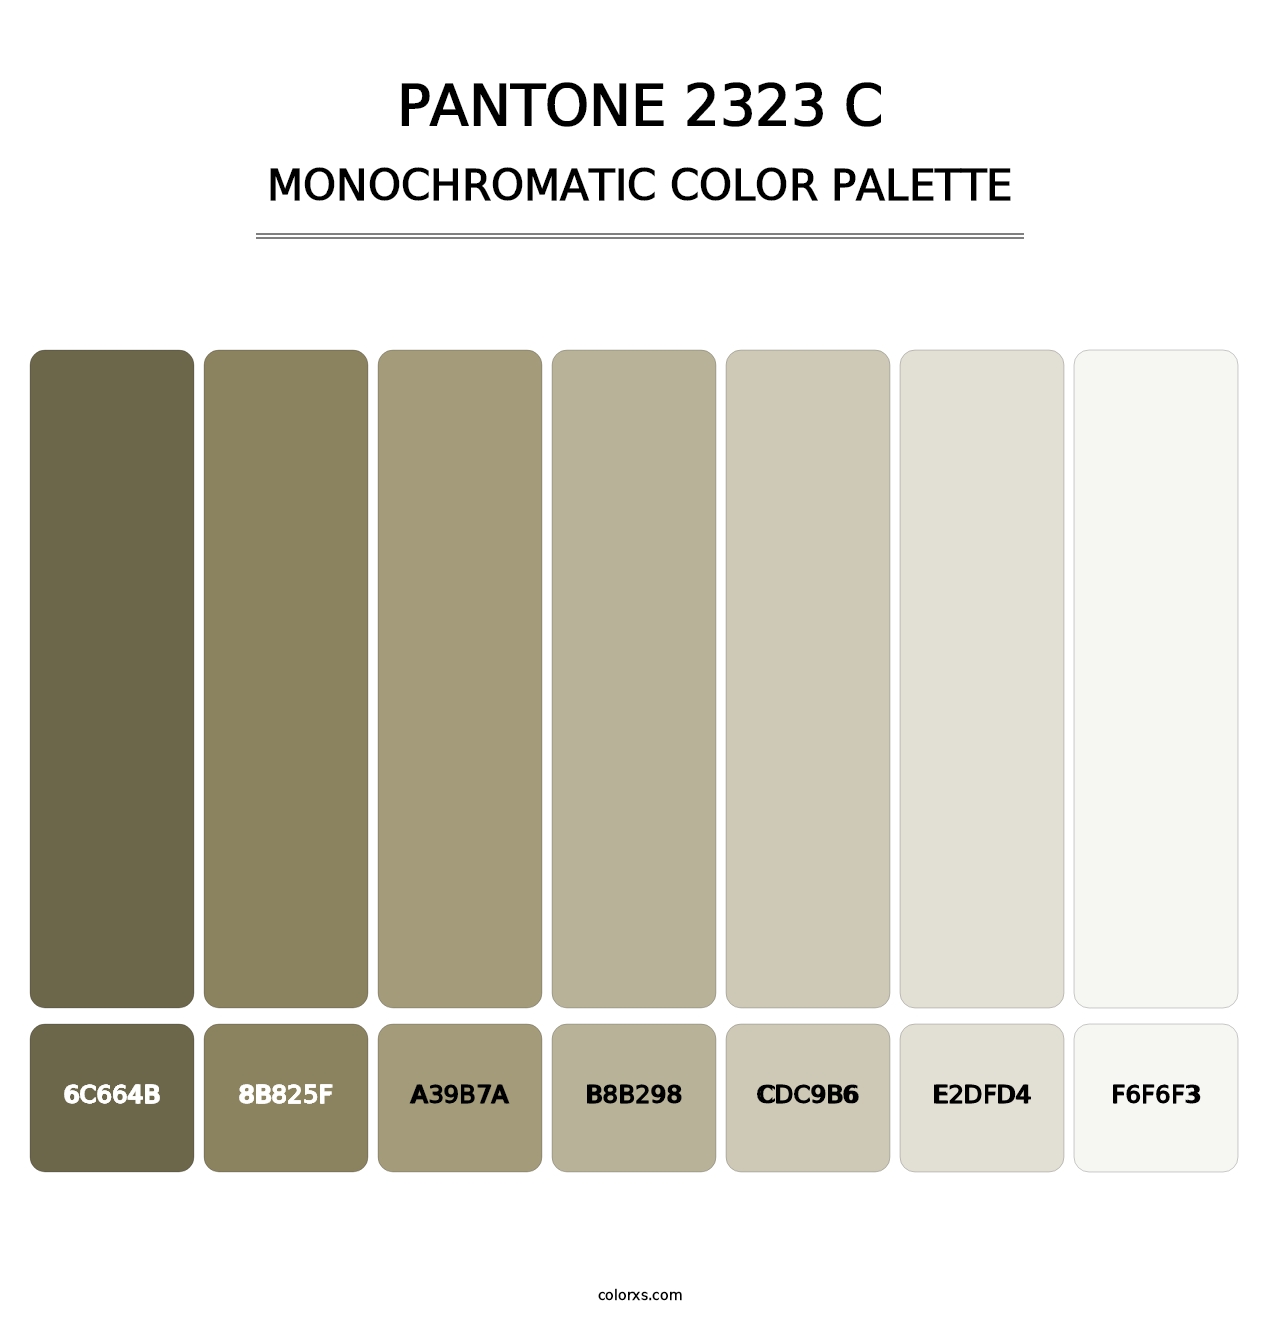 PANTONE 2323 C - Monochromatic Color Palette